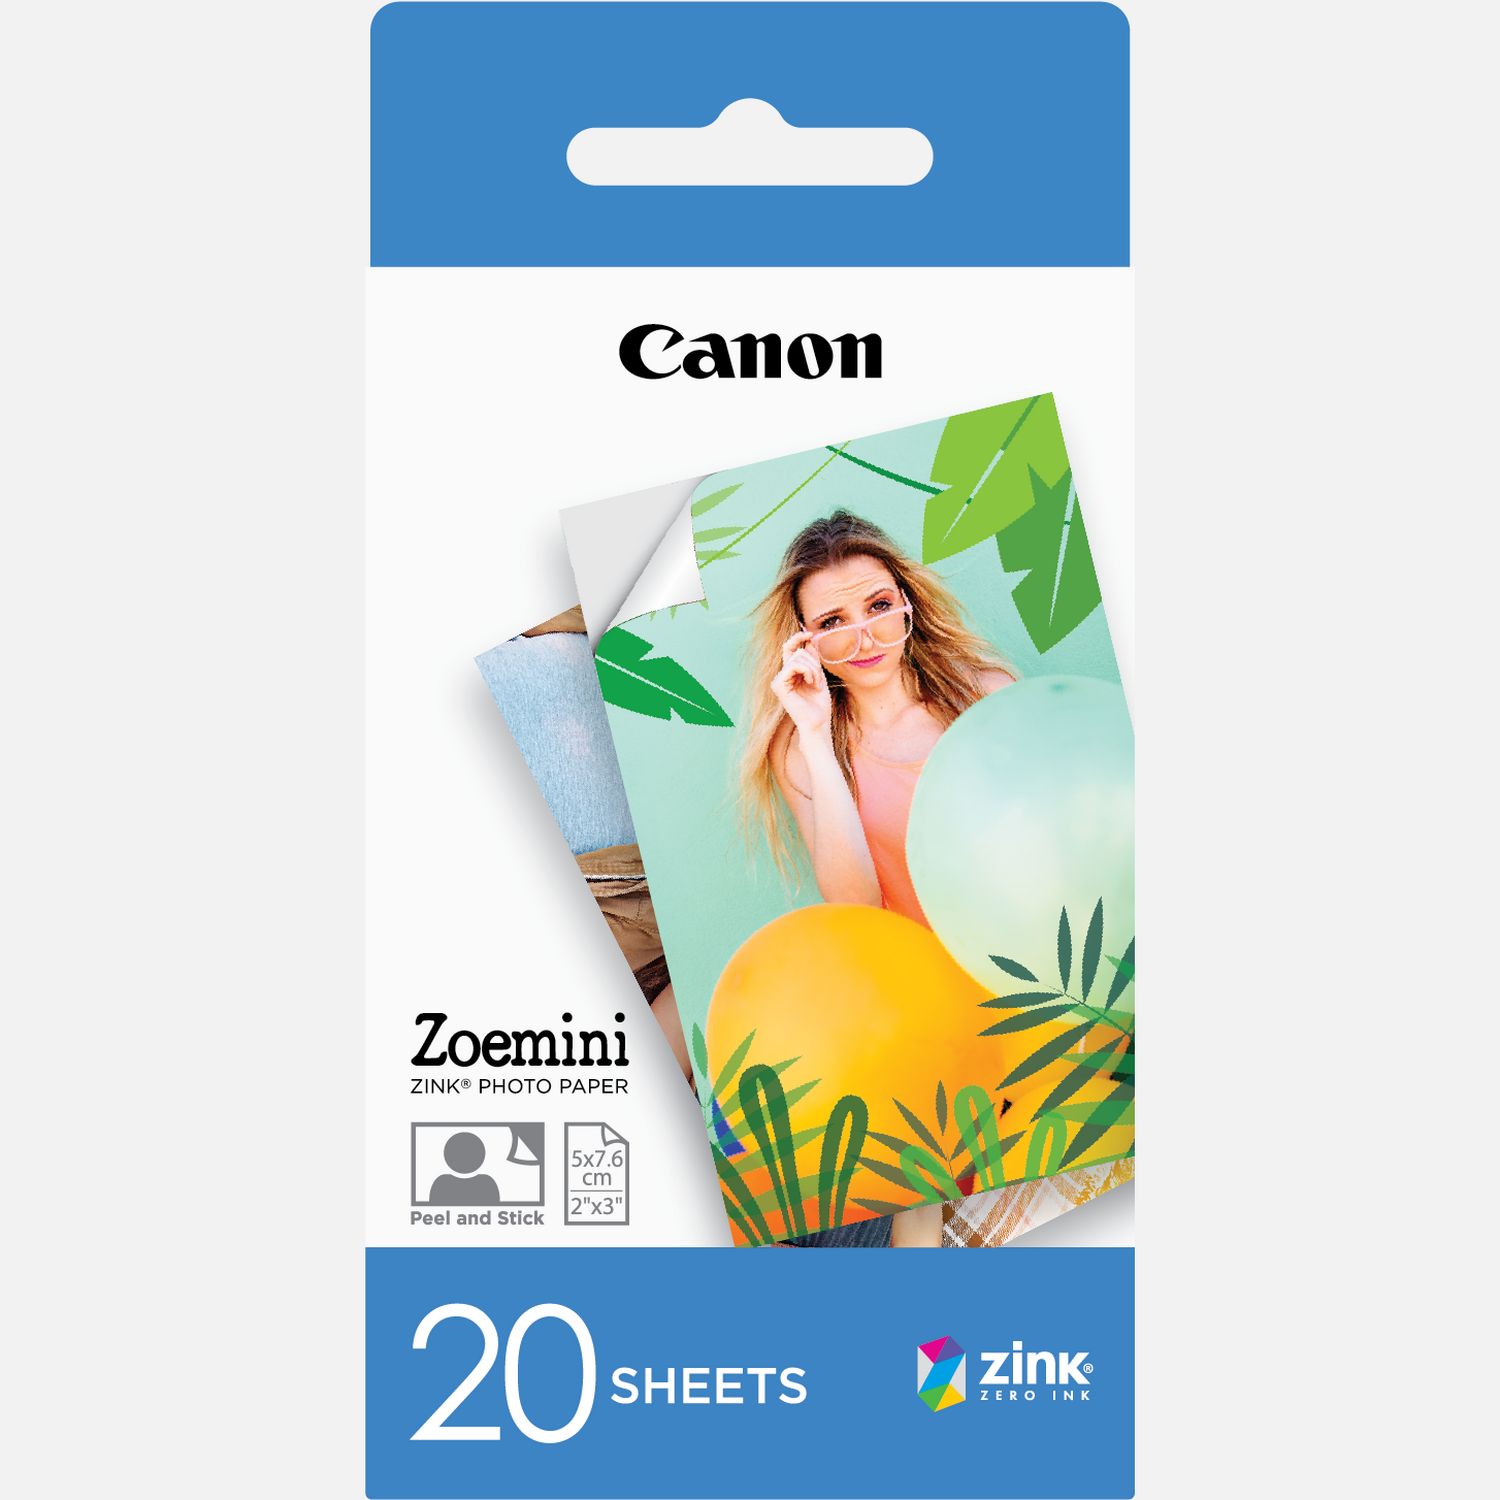 Zo snel als een flits Vet Neem de telefoon op 20 vel Canon ZINK™ 2"x3" (5x7,6cm) fotopapier — Canon Nederland Store